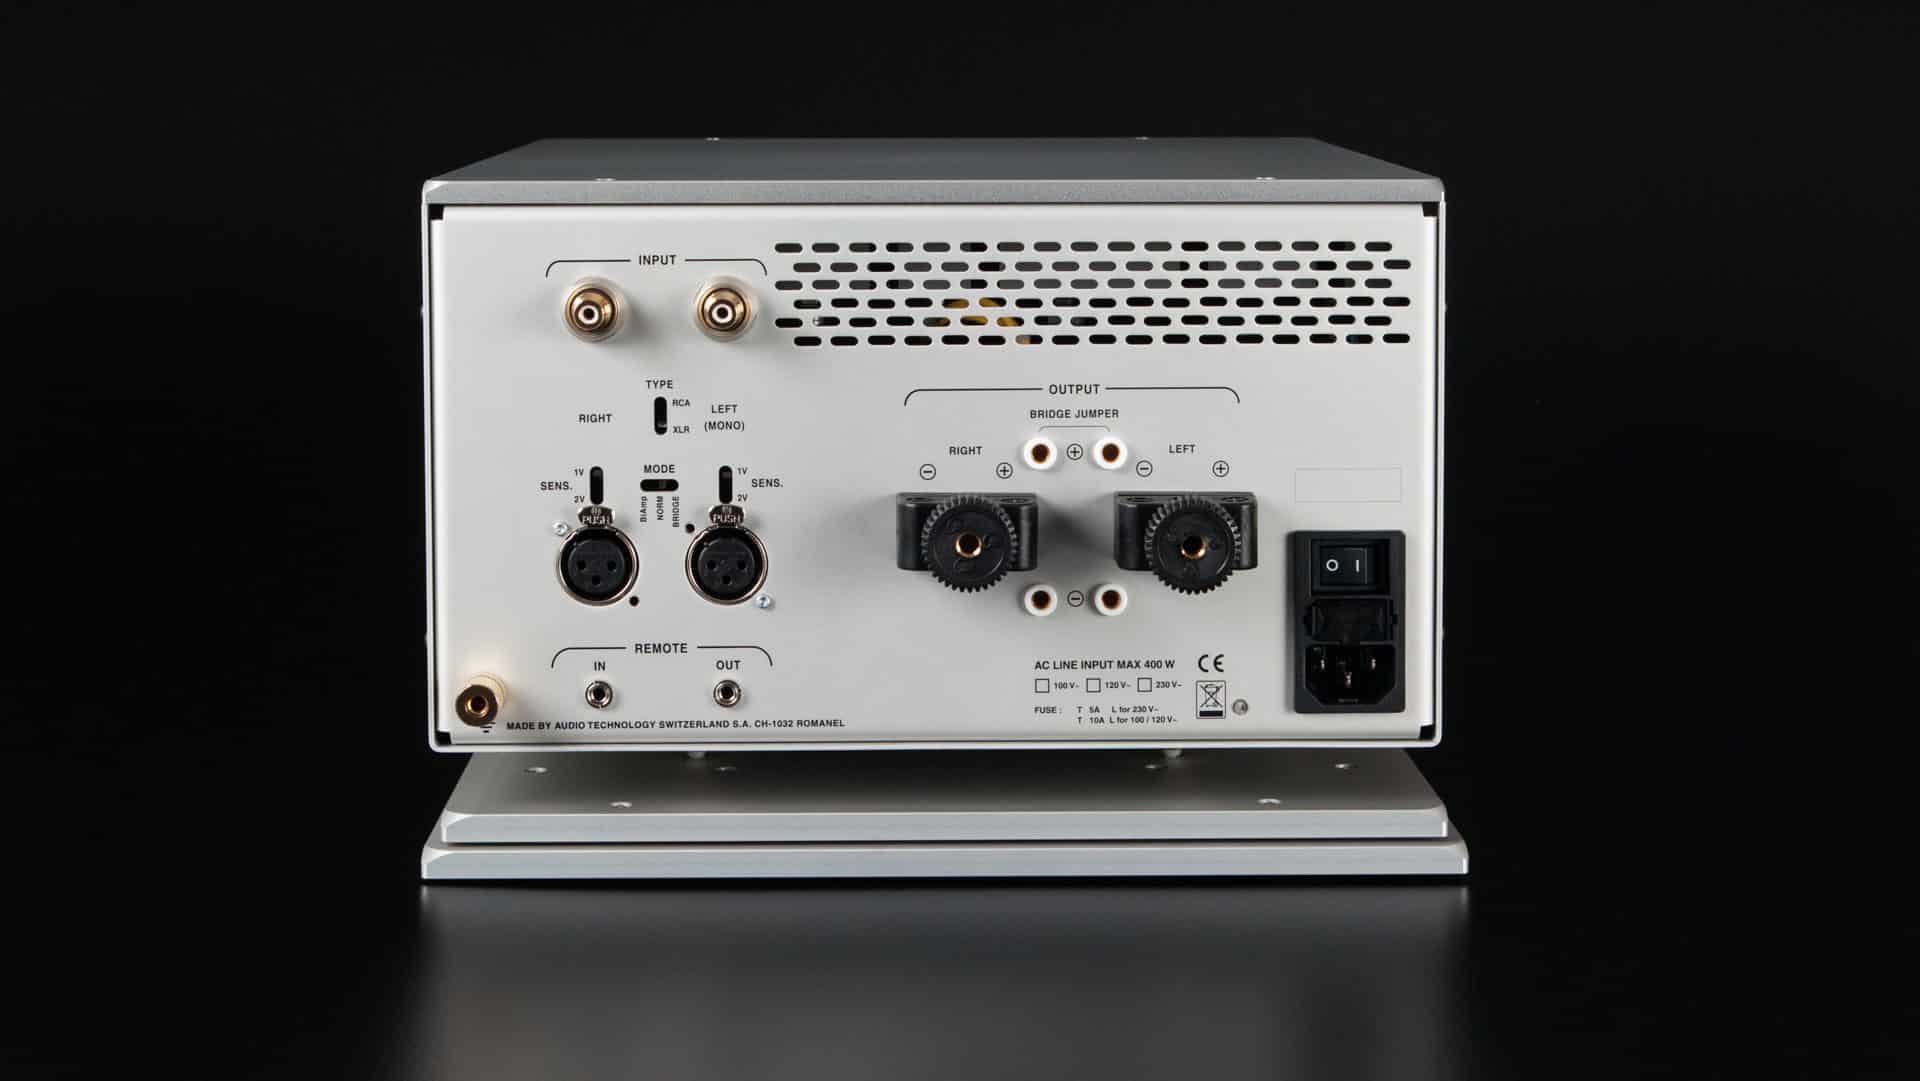 Nagra Classic Amp Festkörper Stereo Verstärker Mosfet Transistor Transformator bestes Modell Rückseite VF